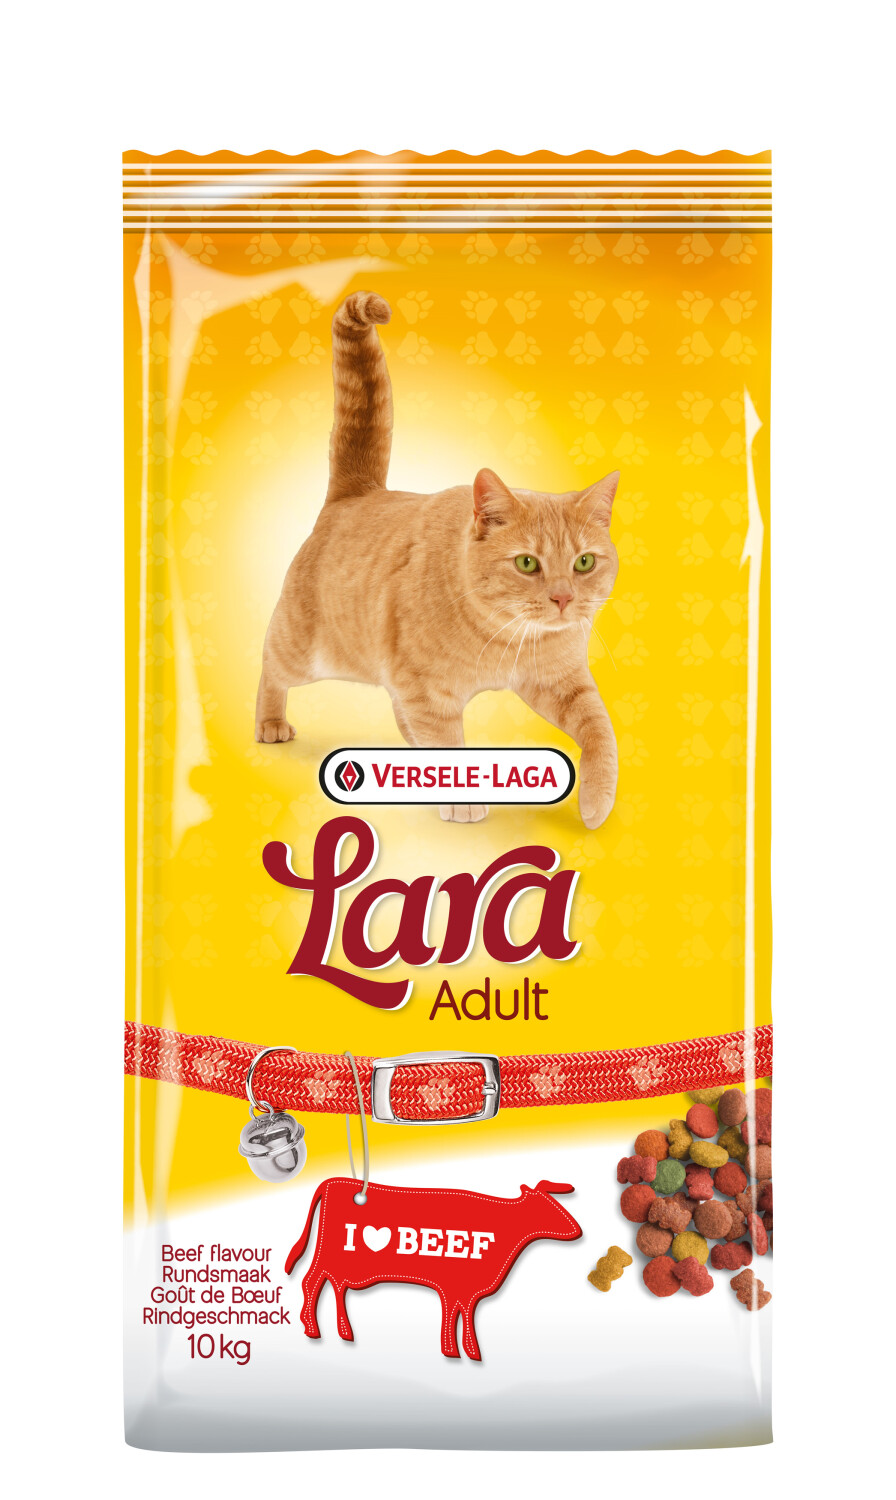 Afbeelding Versele-Laga Lara Rund kattenvoer 10 kg door Tuinadvies.be